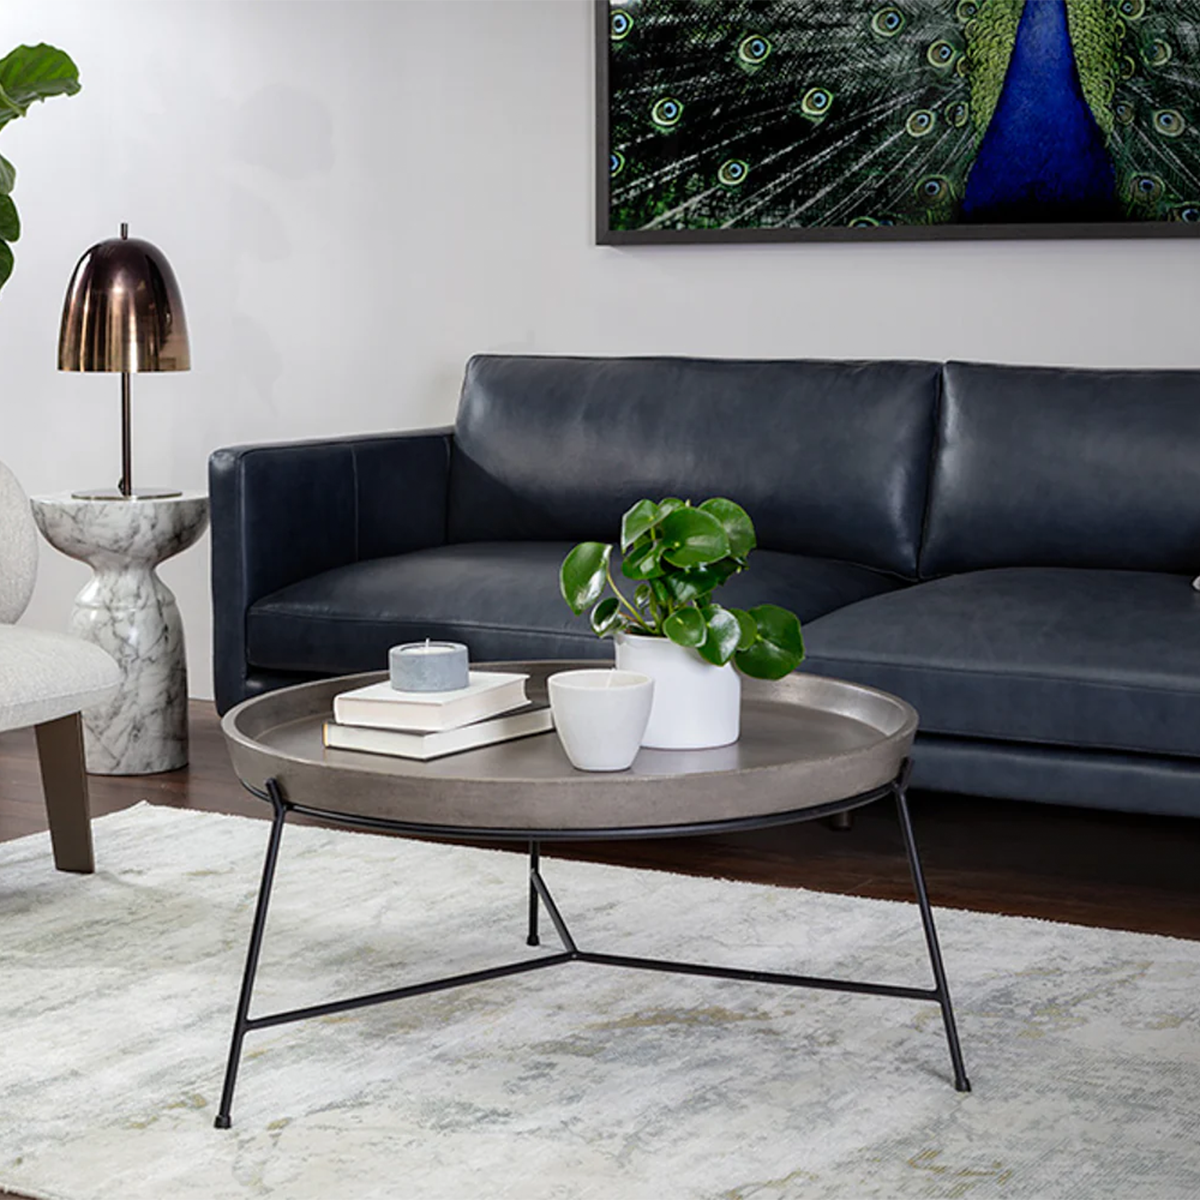 Remy Coffee Table by Sunpan in a fancy Livingroom